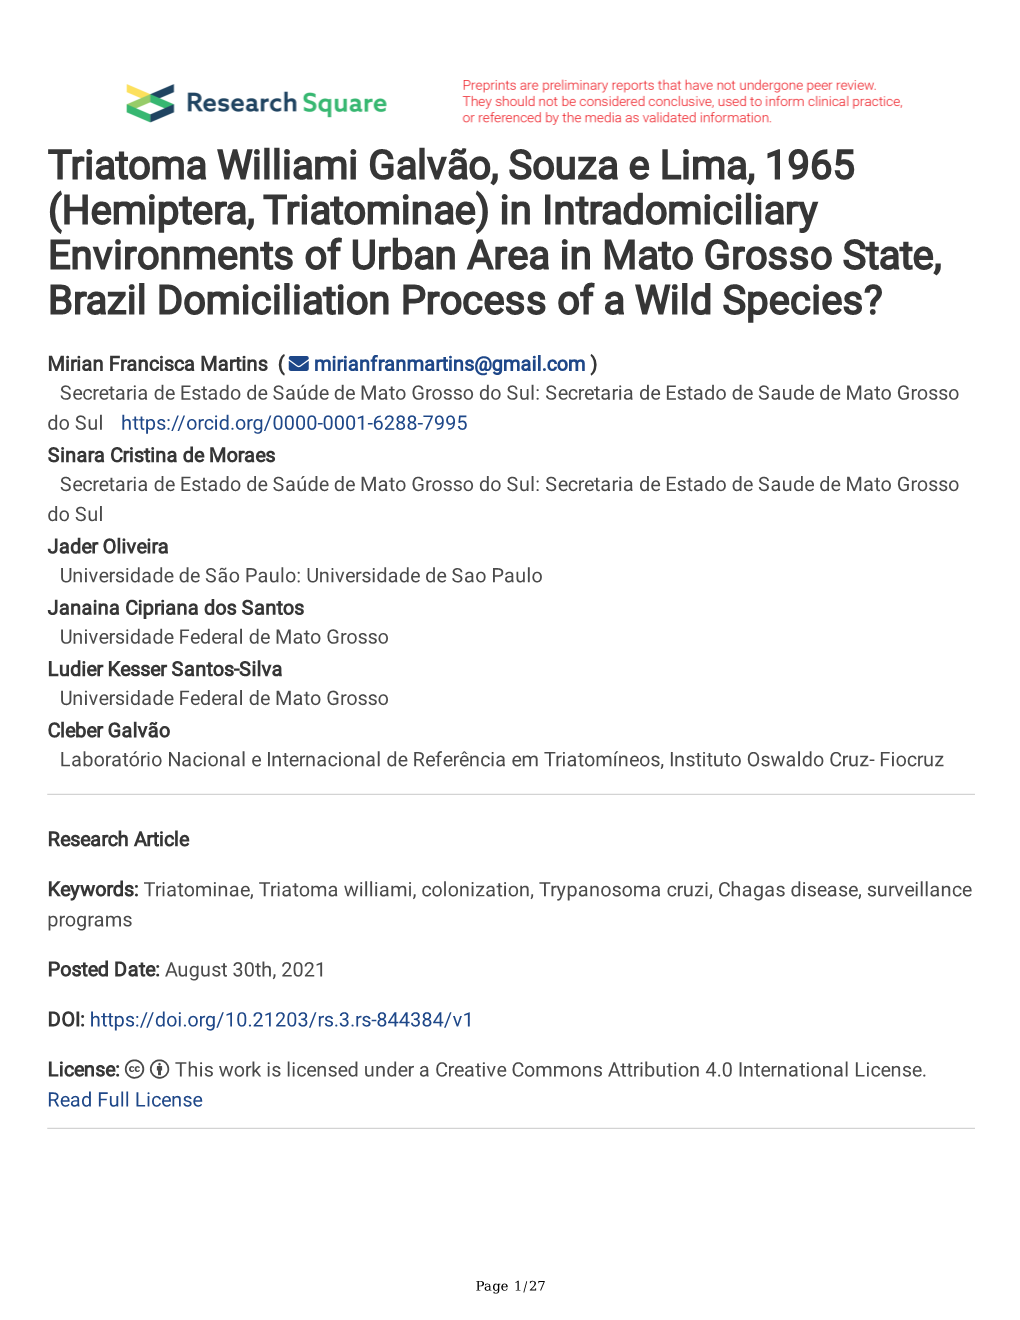 Triatoma Williami Galvão, Souza E Lima, 1965 (Hemiptera, Triatominae) in Intradomiciliary Environments of Urban Area in Mato Gr